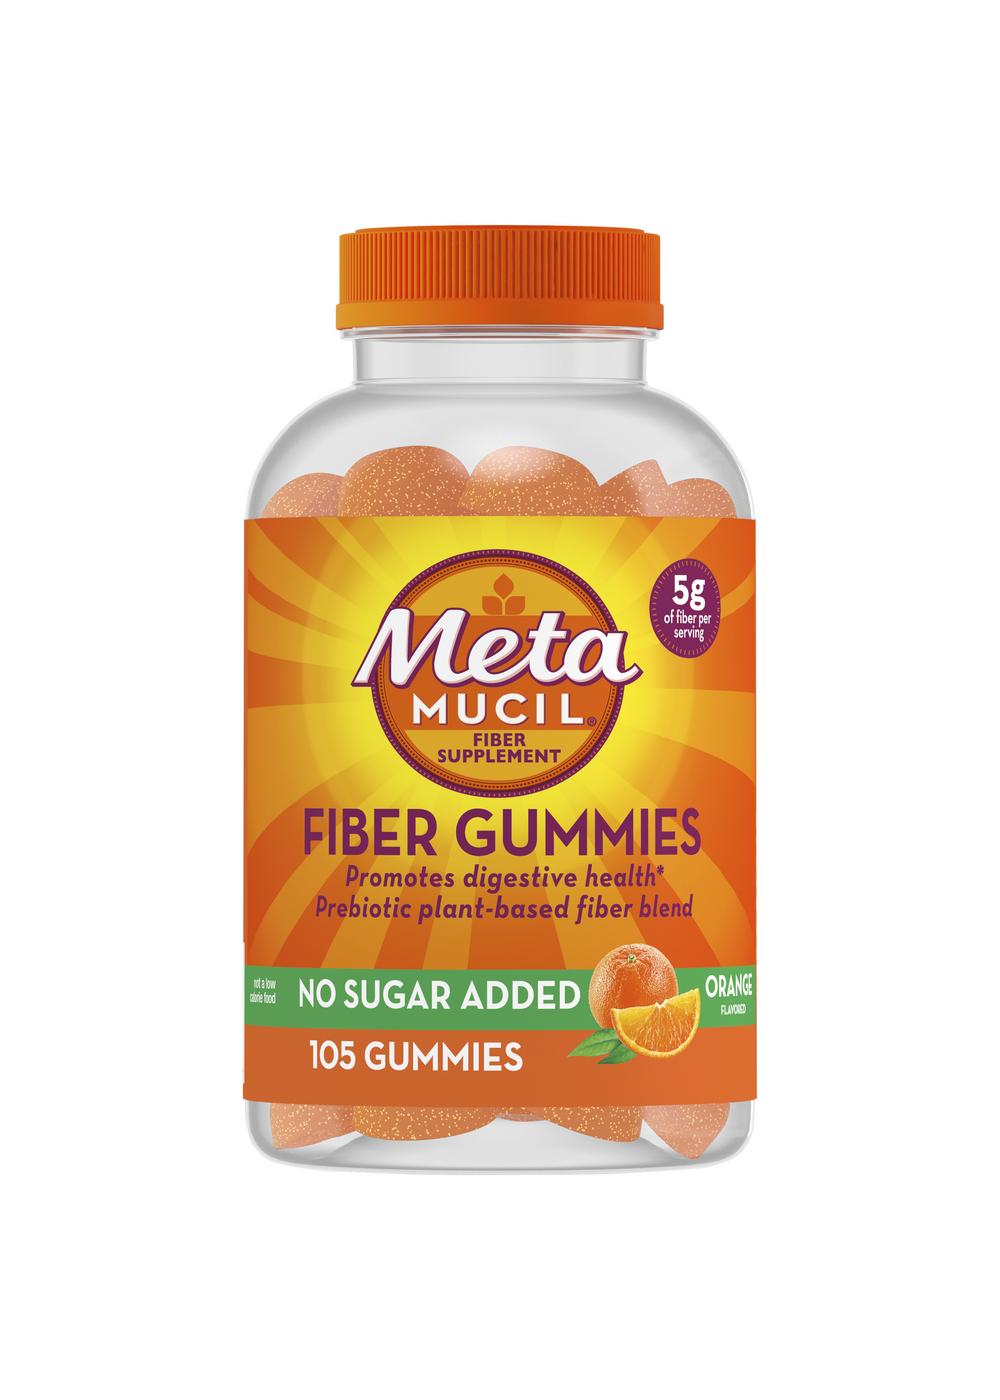 Metamucil No Sugar Added Fiber Gummies - Orange; image 1 of 3